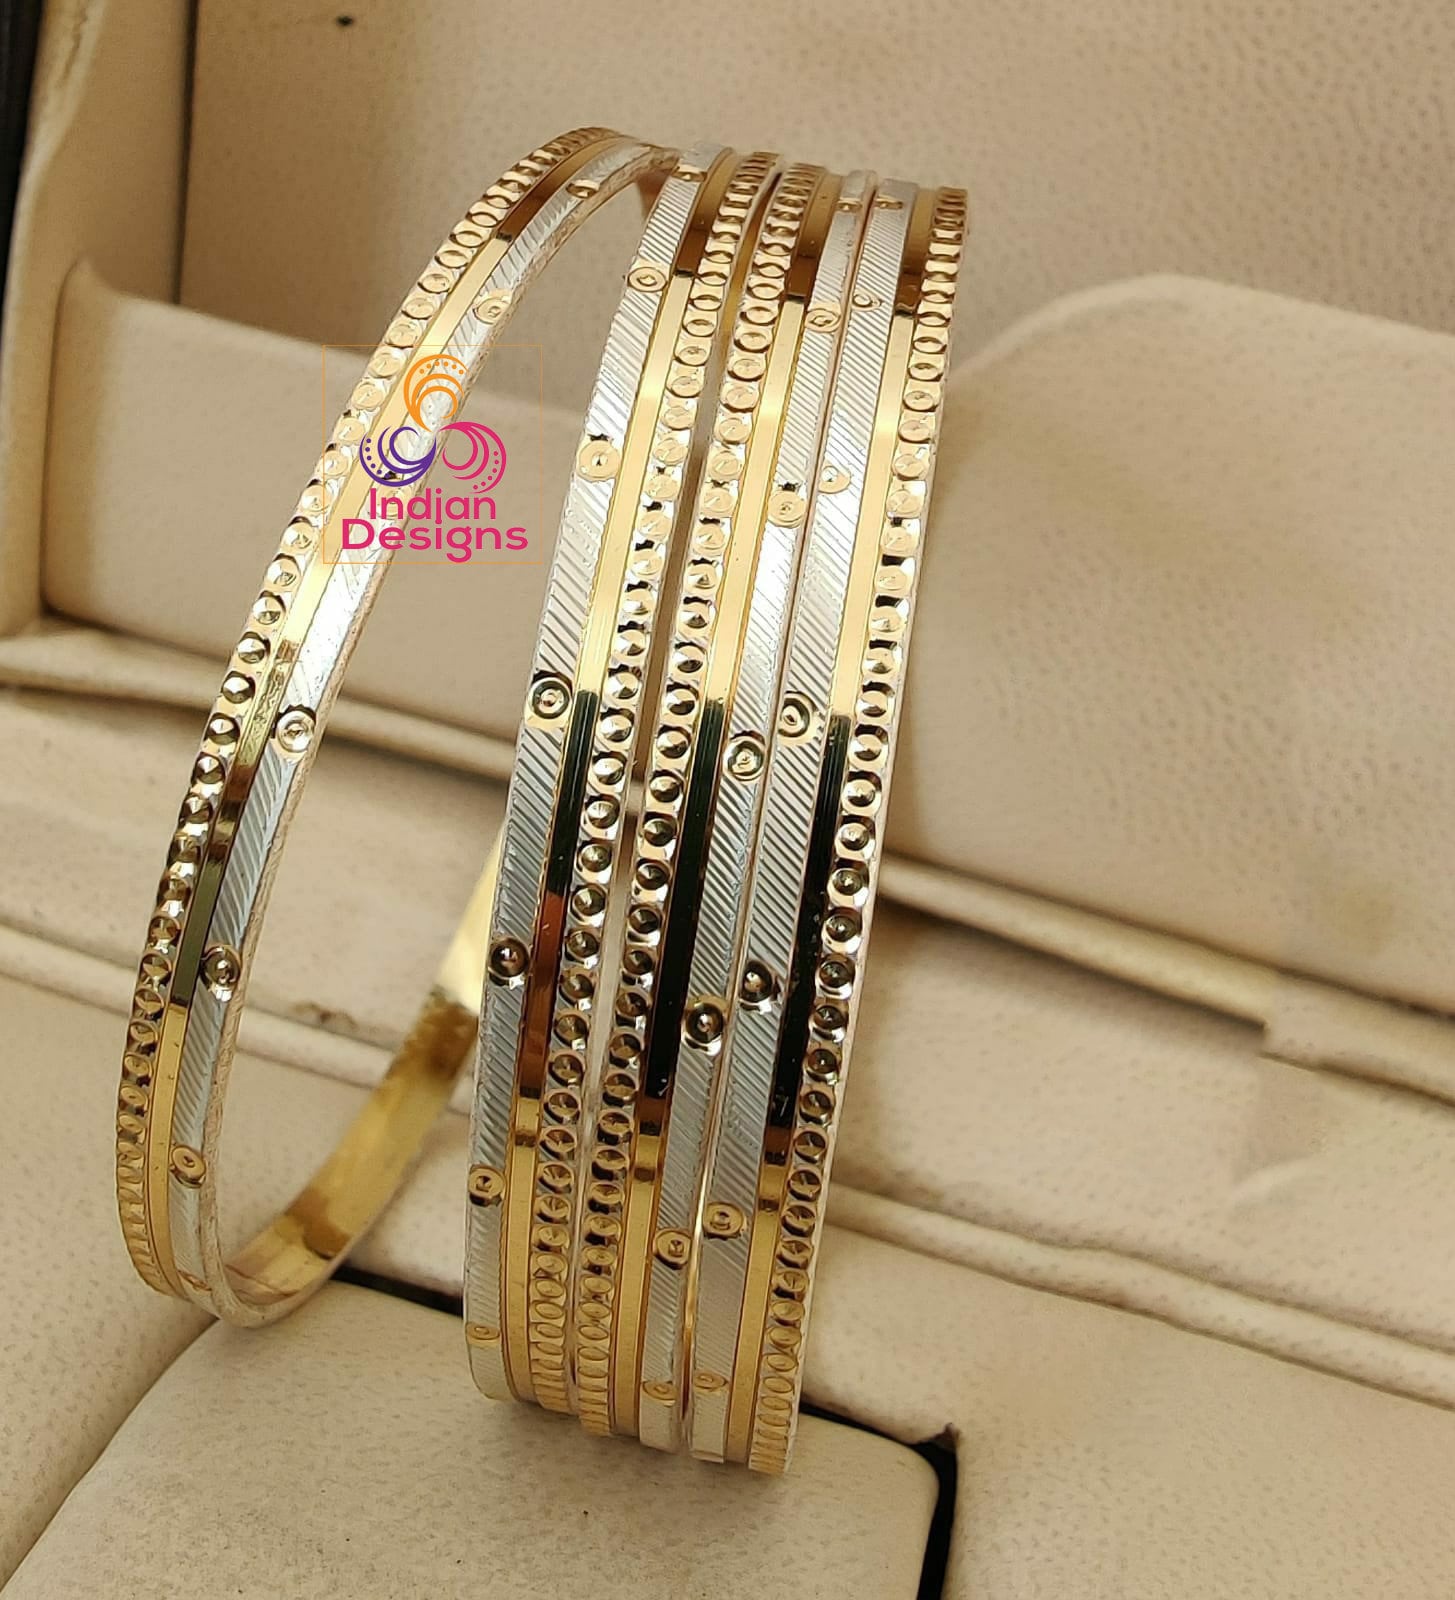 Buy Elegant Light Weight Chain Type 1 Gram Gold Bracelet